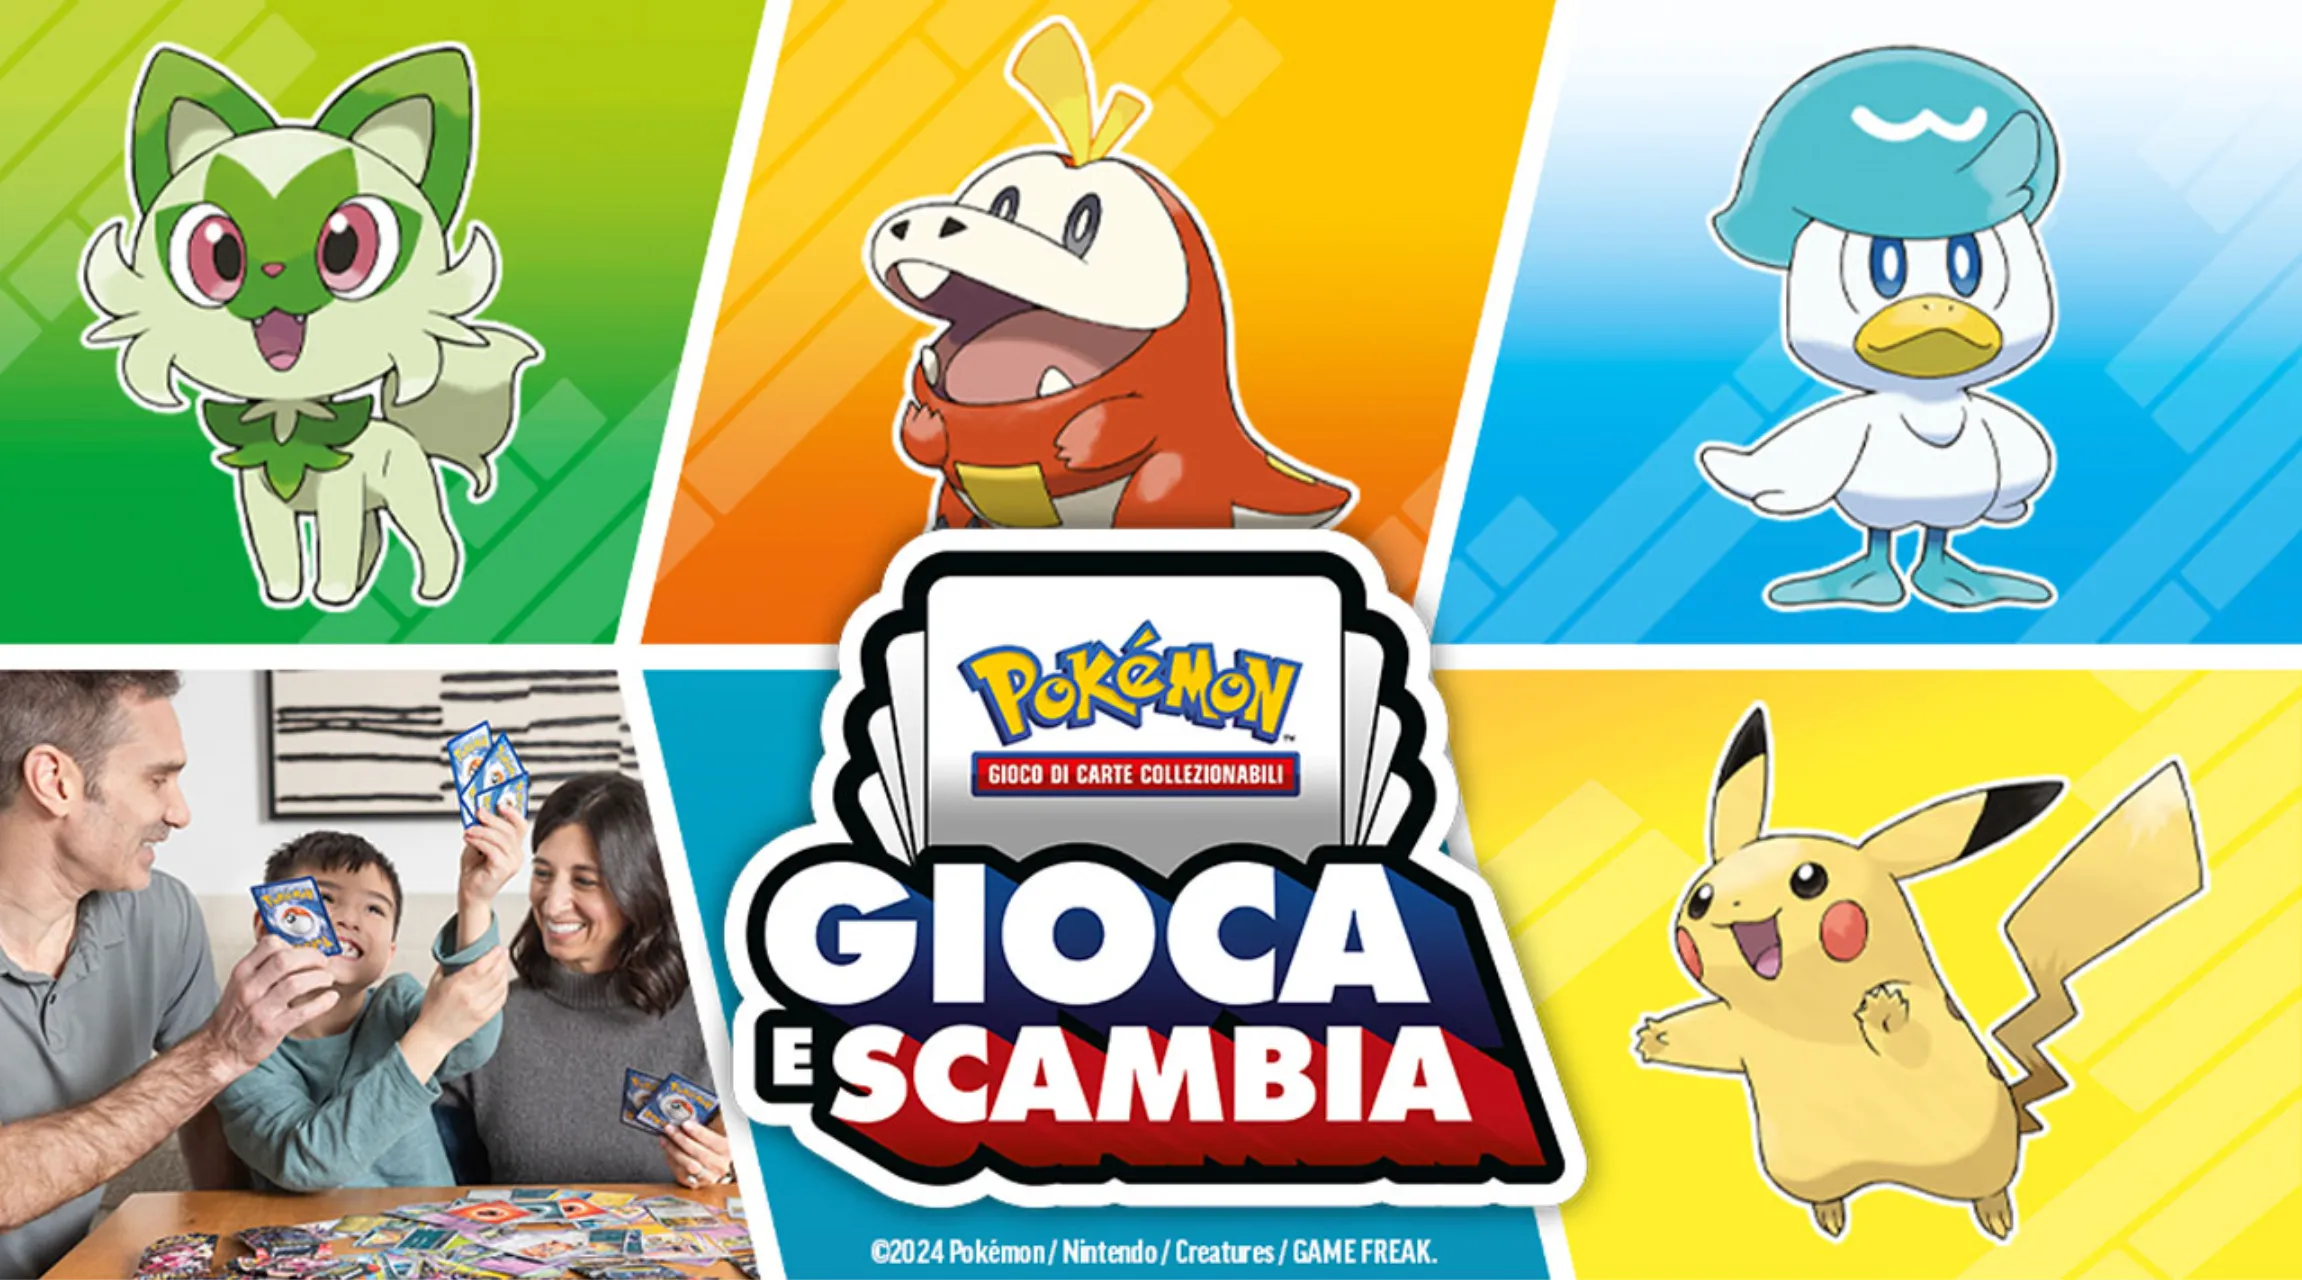 Le prossime tappe del tour Pokémon Gioca e Scambia